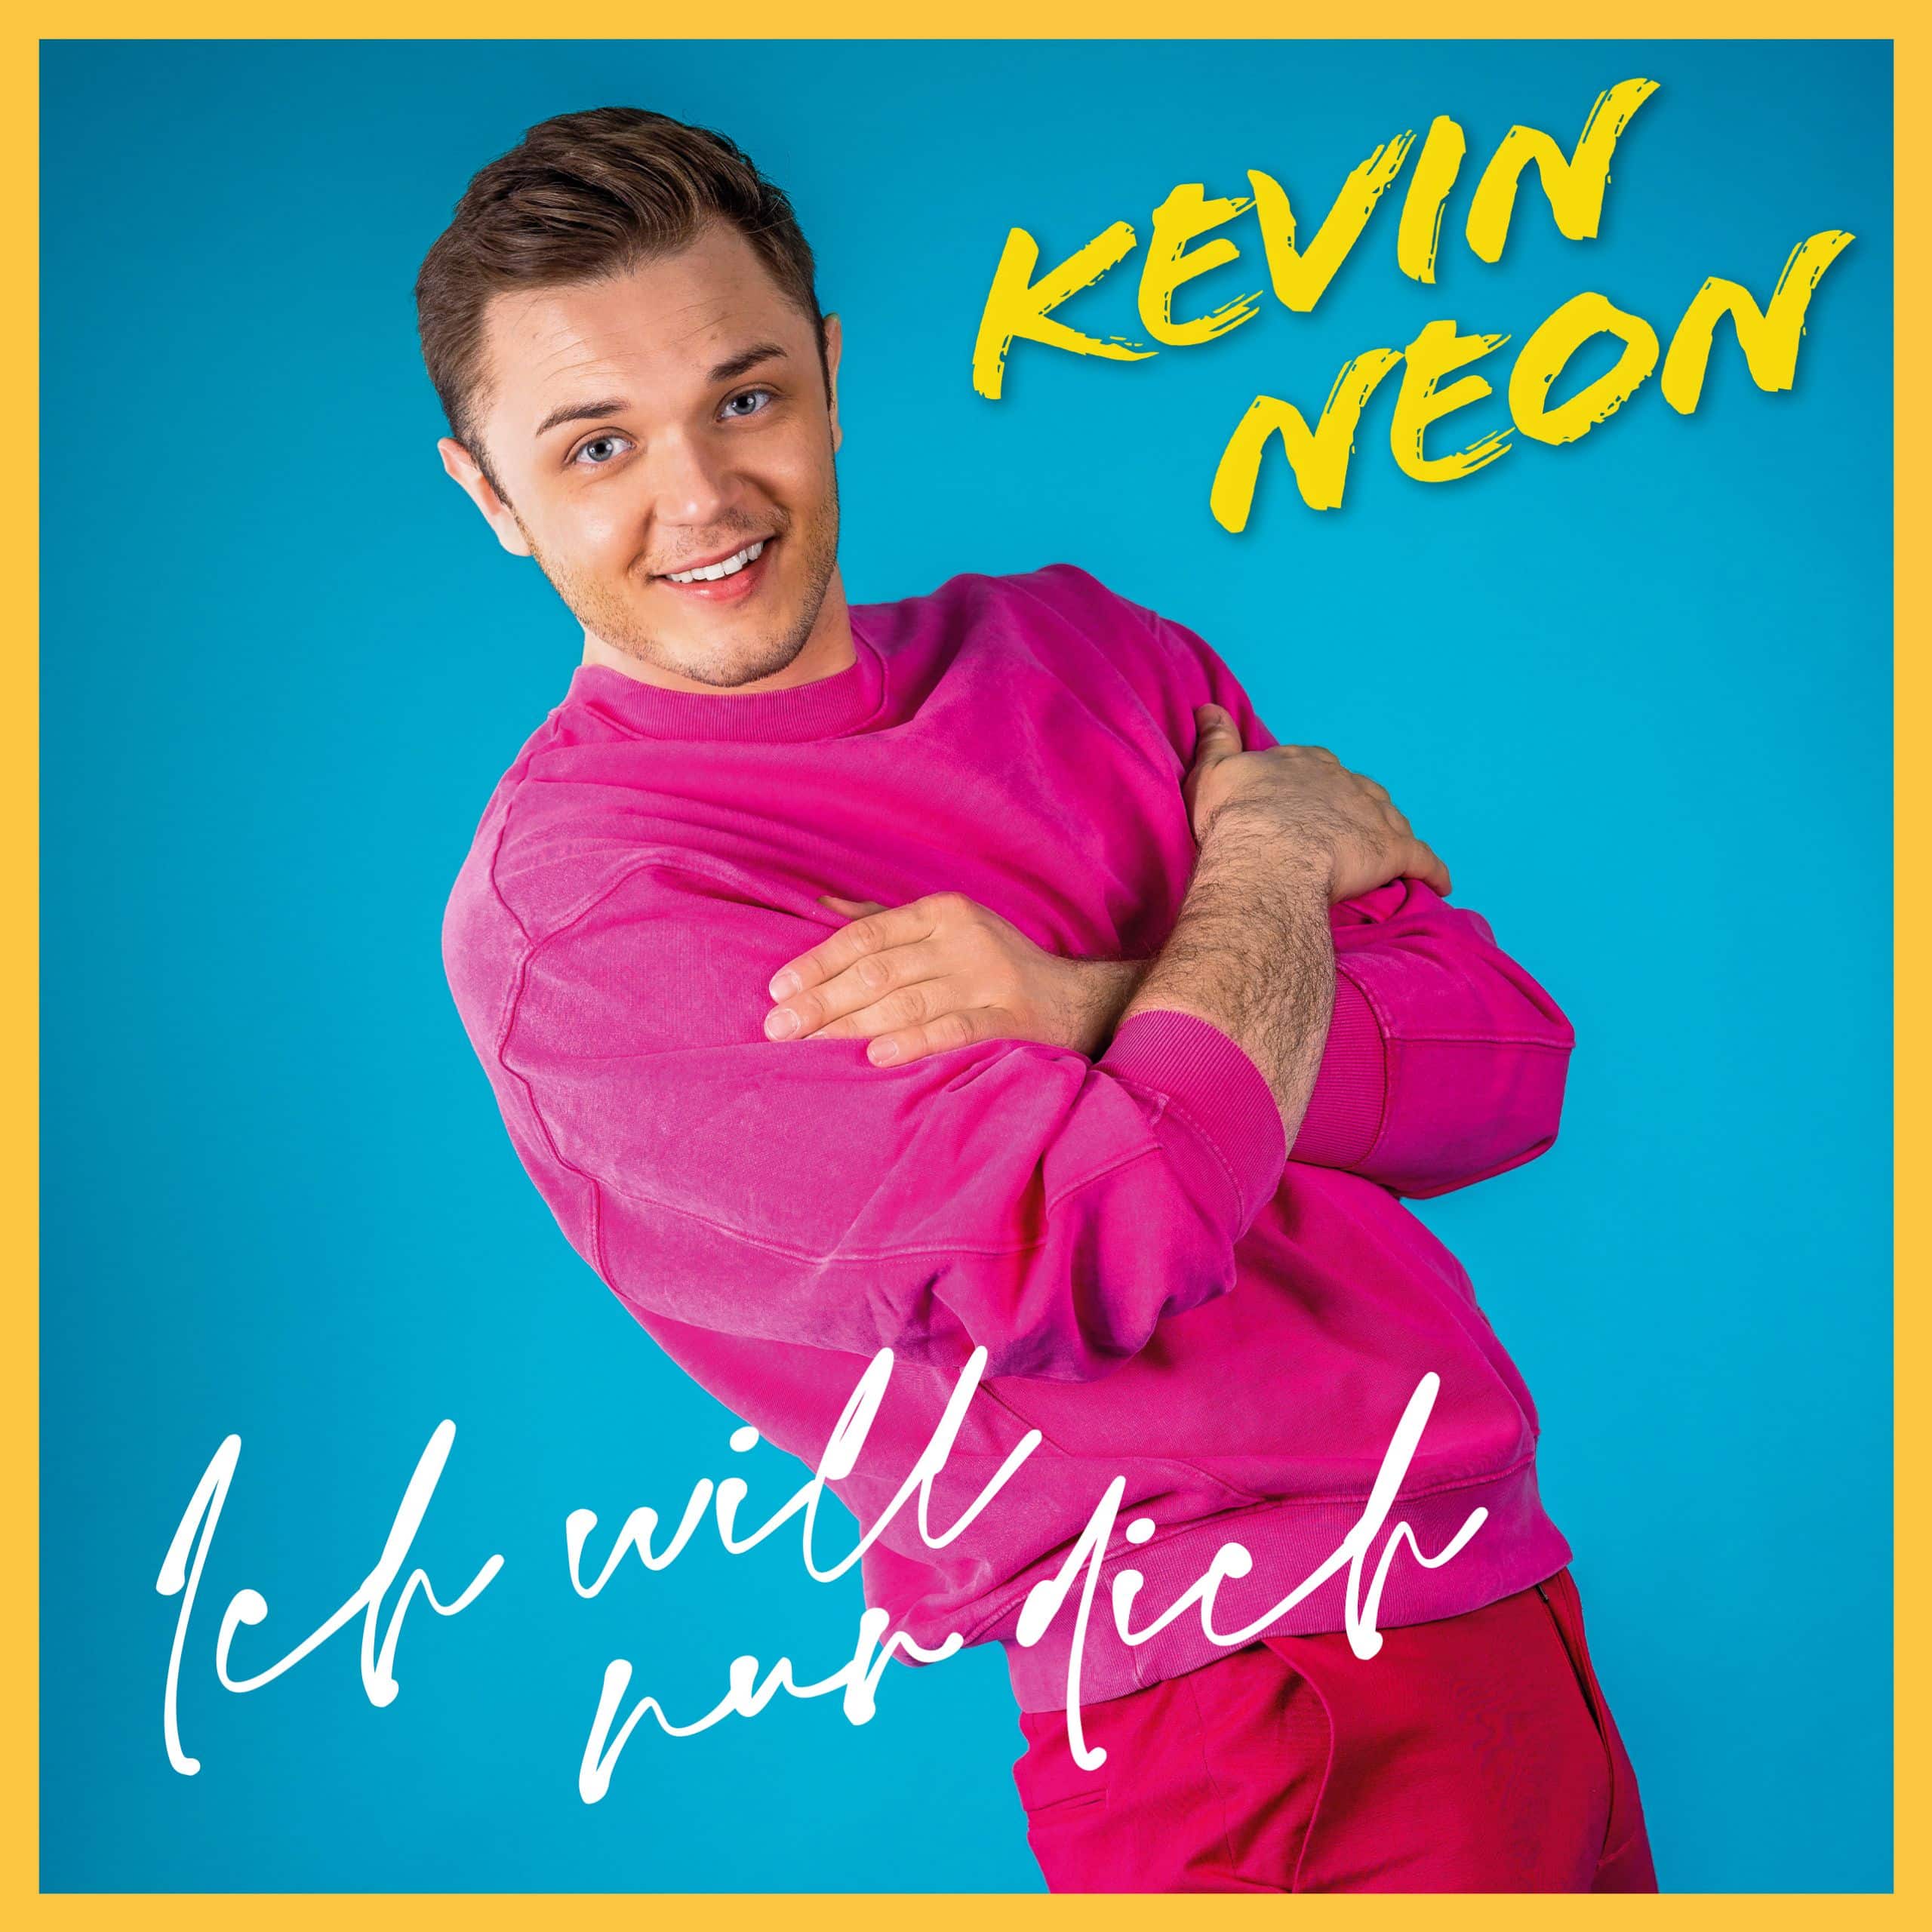 Kevin Neon Ich will nur dich